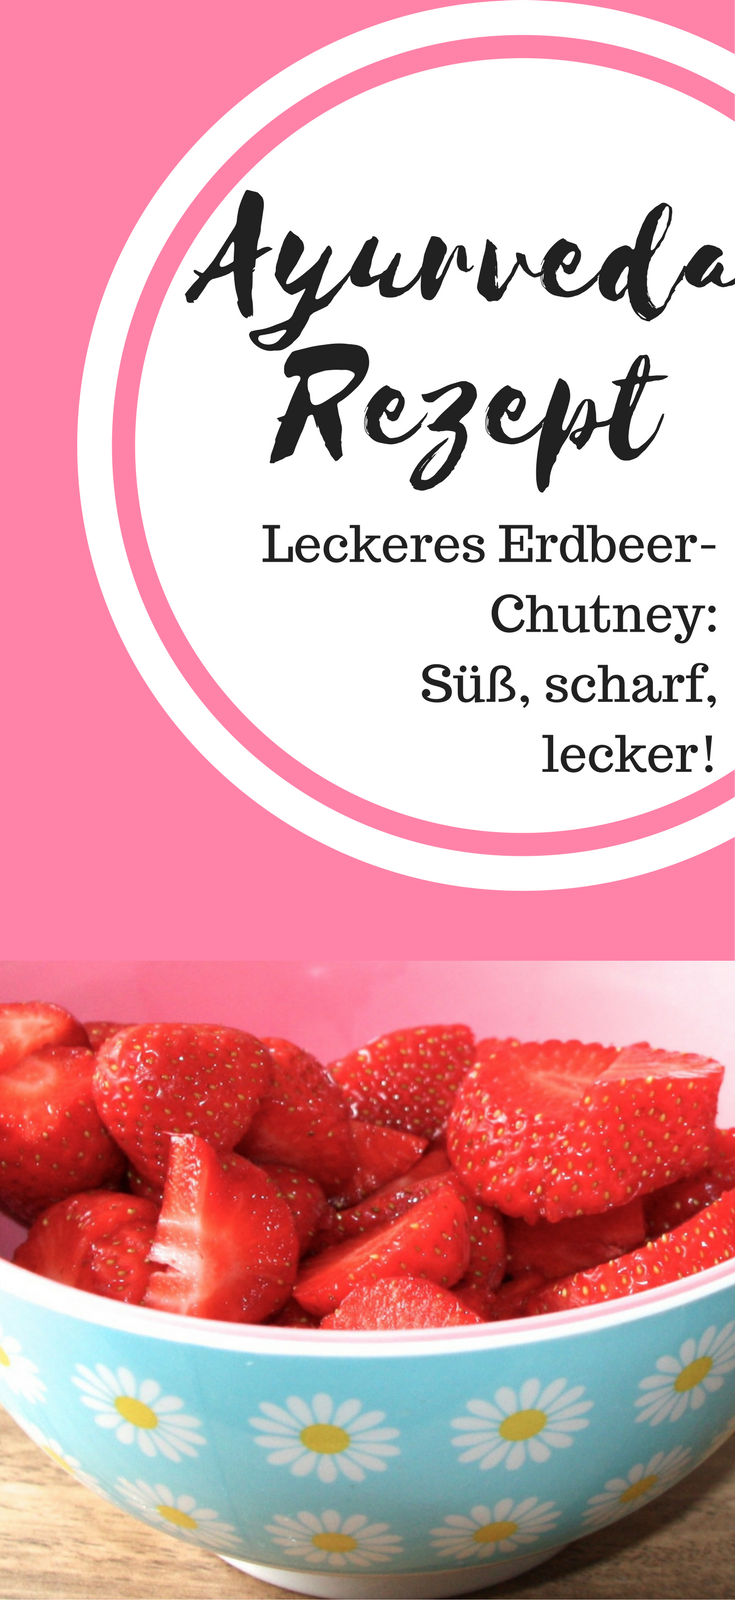 Erdbeer-Chutney-Rezept